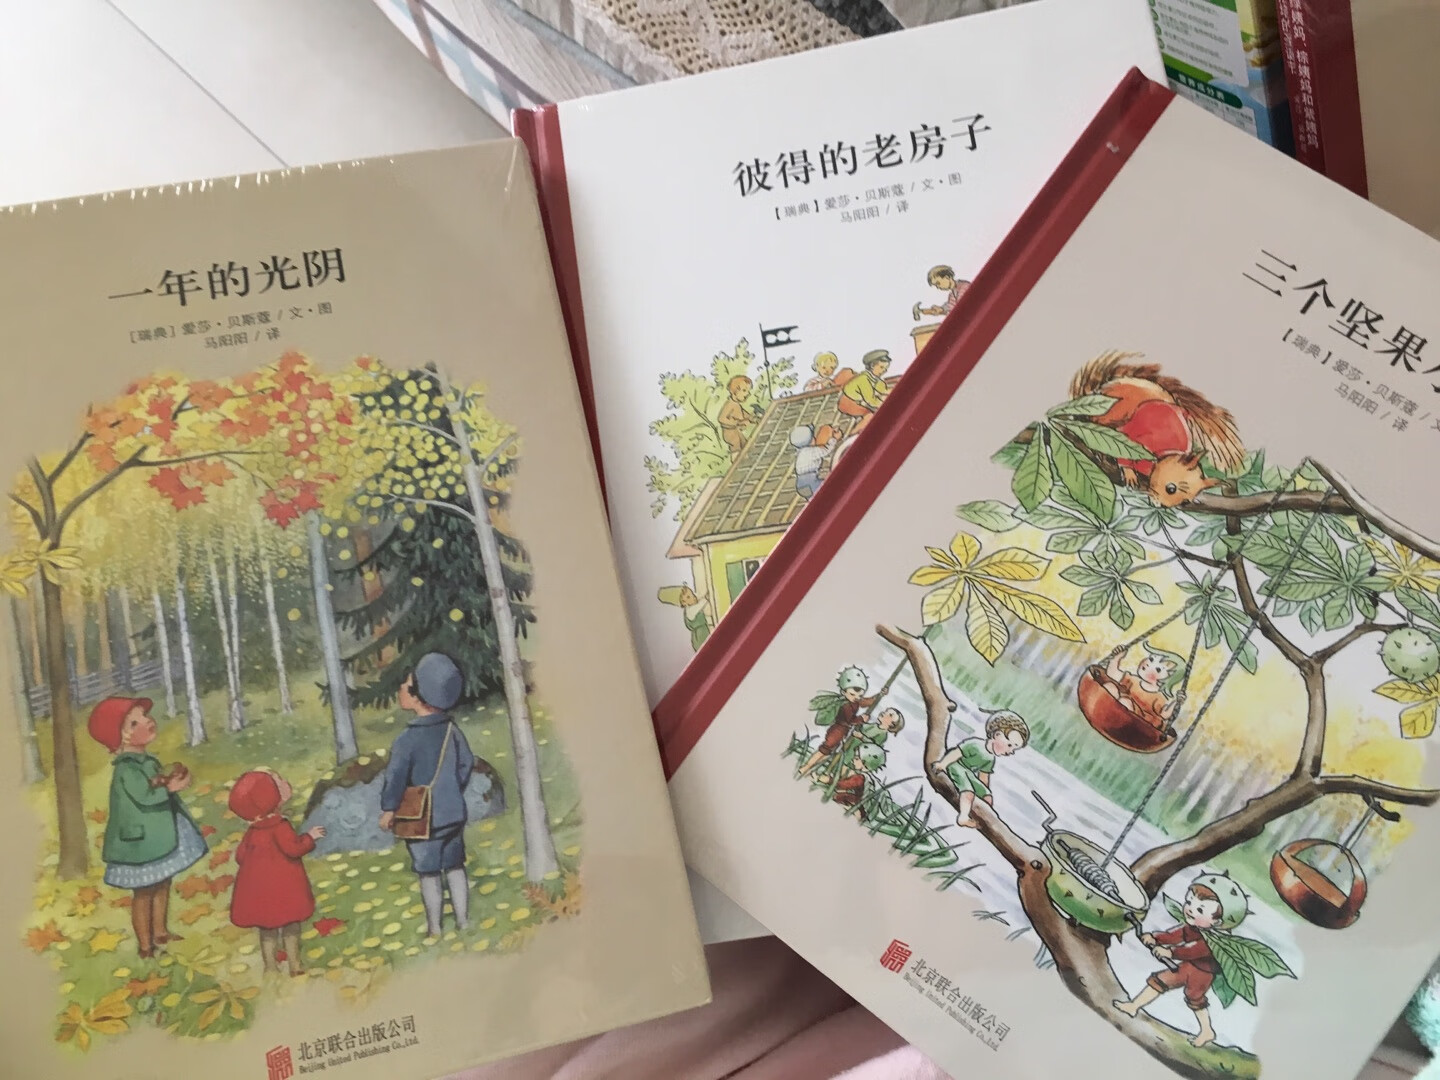 本来想给小宝宝买英文幼儿绘本的，选着选着看到了很多中文绘本自己都很喜欢。在这家买了好多书，收到发现入手了很多［爱莎］的书。昨天又下单了一本［森林里的小宝贝］。。。。买了太多，还有一些爱莎的书最终没买了。［一年的光阴］是围绕一年12个?，每个月有有绘画和文字讲述，帮助小盆友了解每个月的特点。整体［爱莎］系列的插画很喜欢这个风格的。都是硬板封面的书，内页插图彩色，每本基本都是比较薄薄的适合比较小的小盆友看。